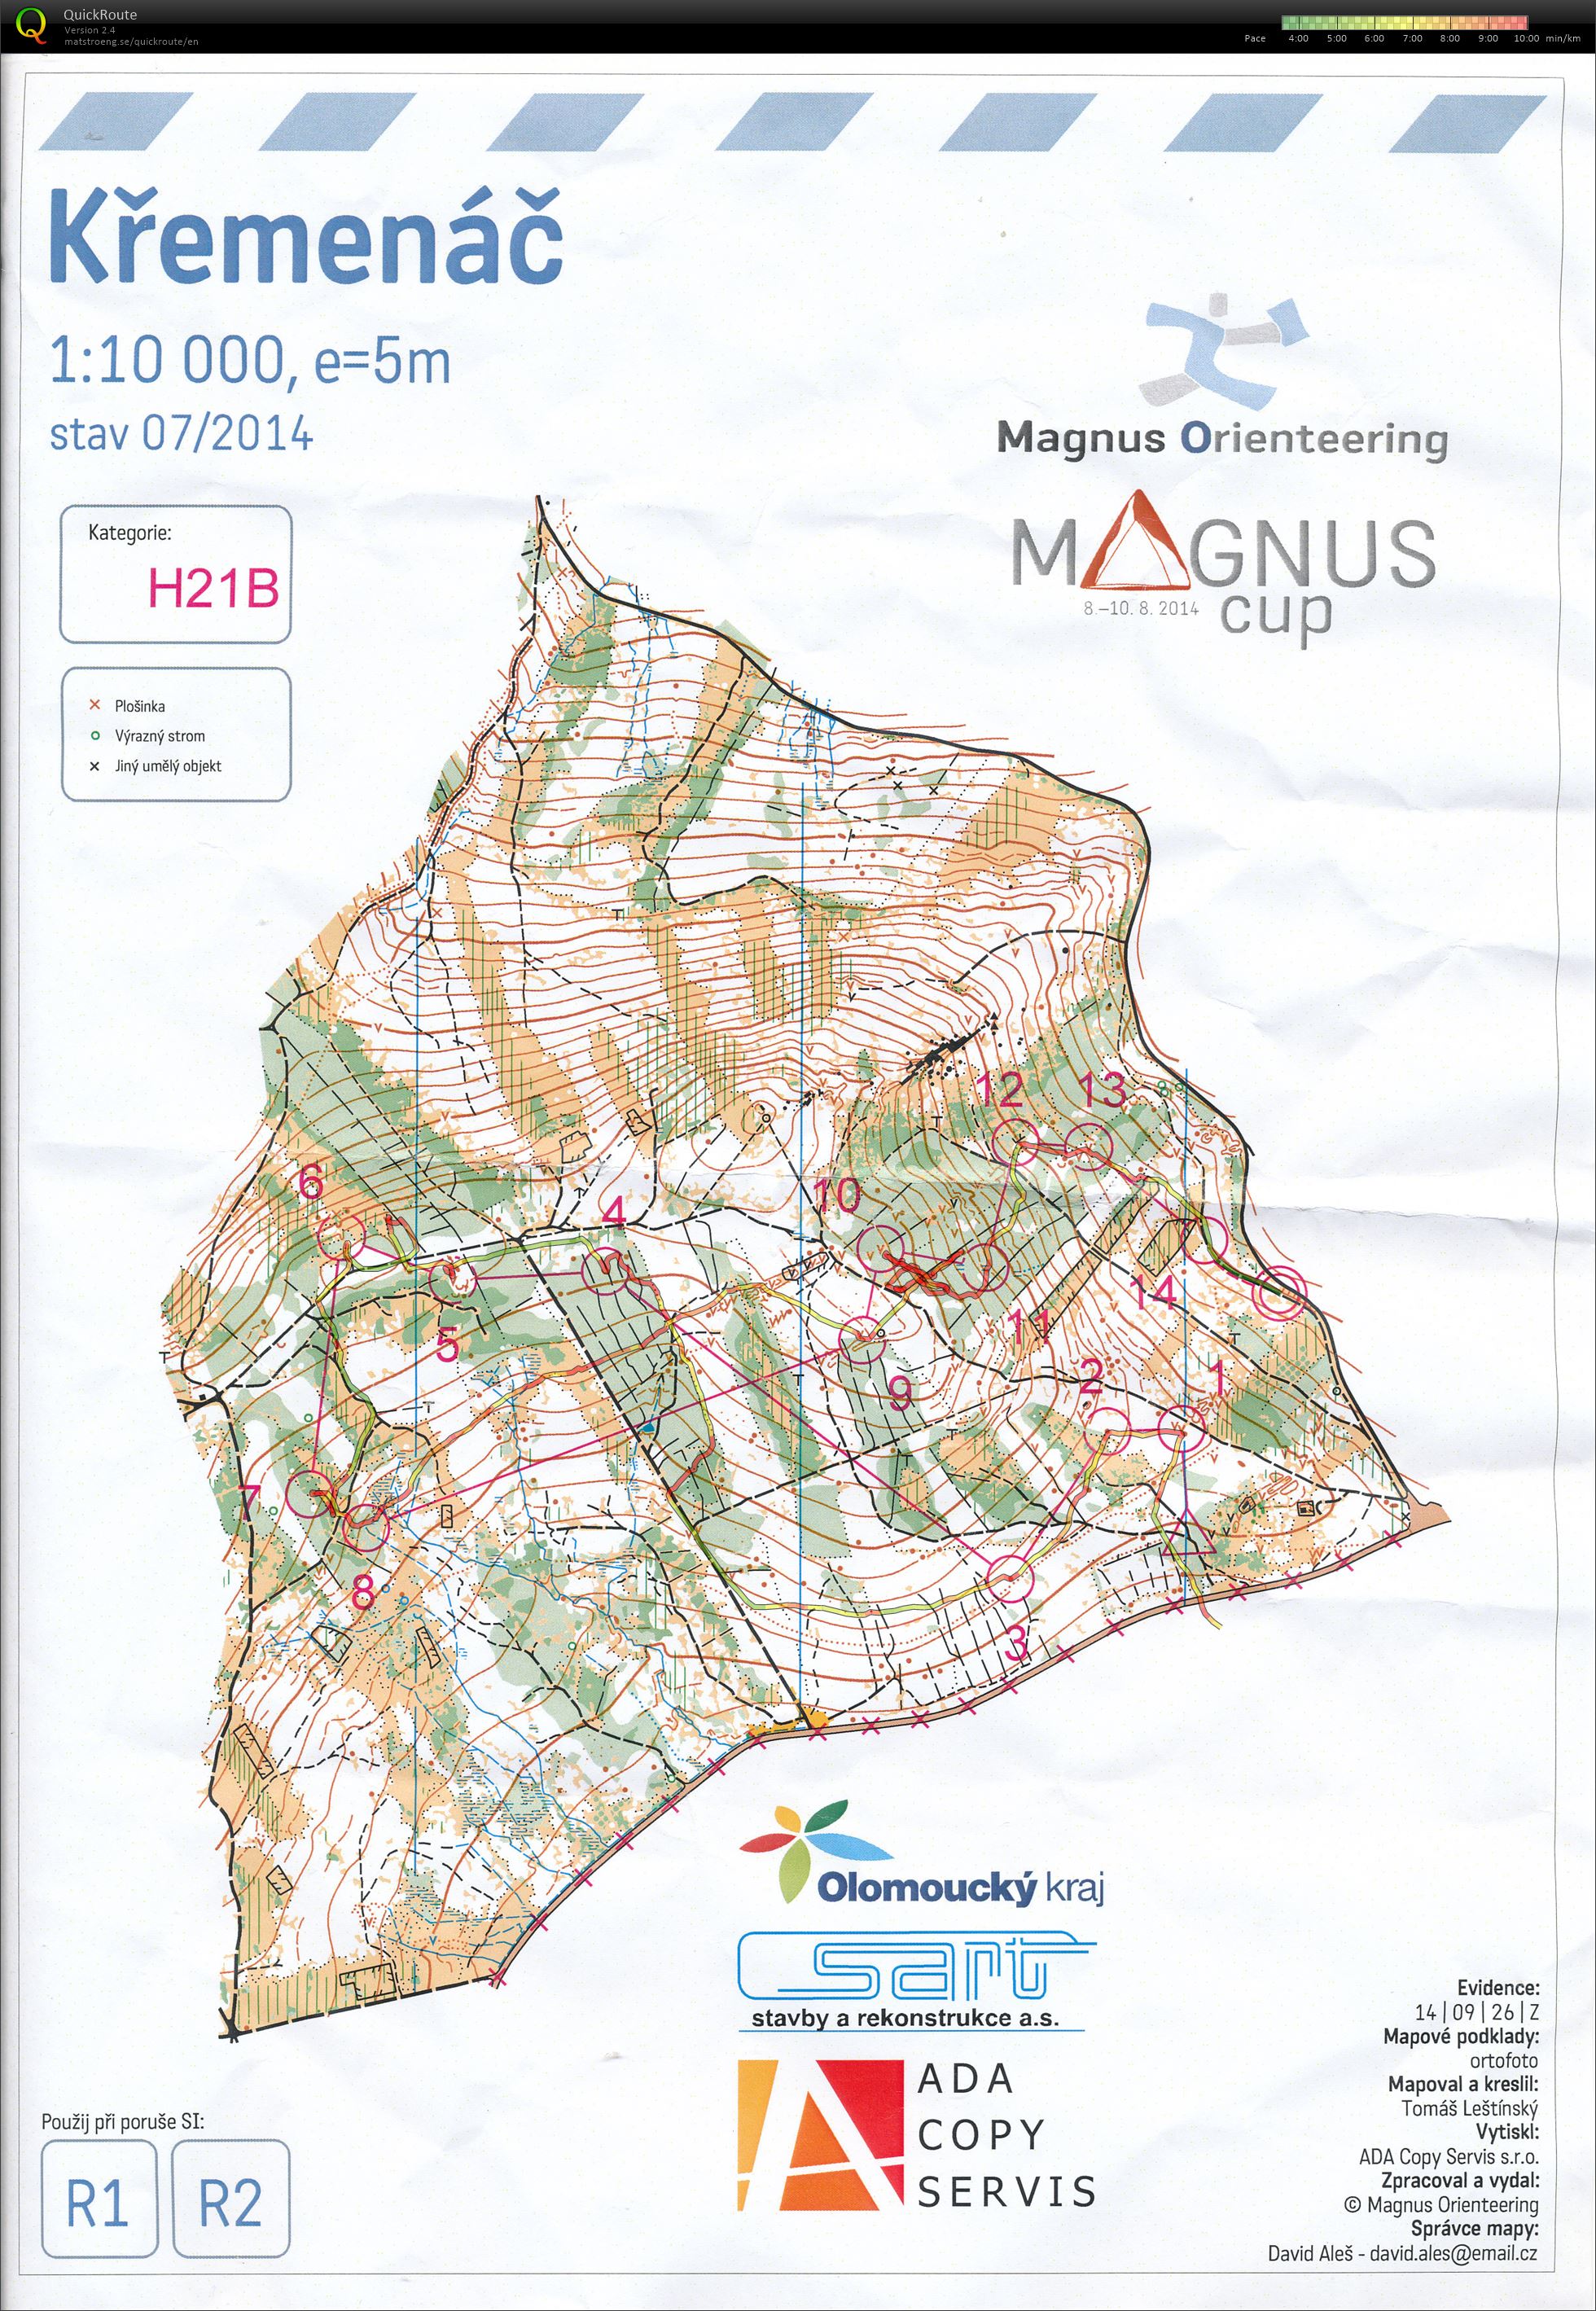 Magnus Cup - Etapa 1 (2014-08-08)